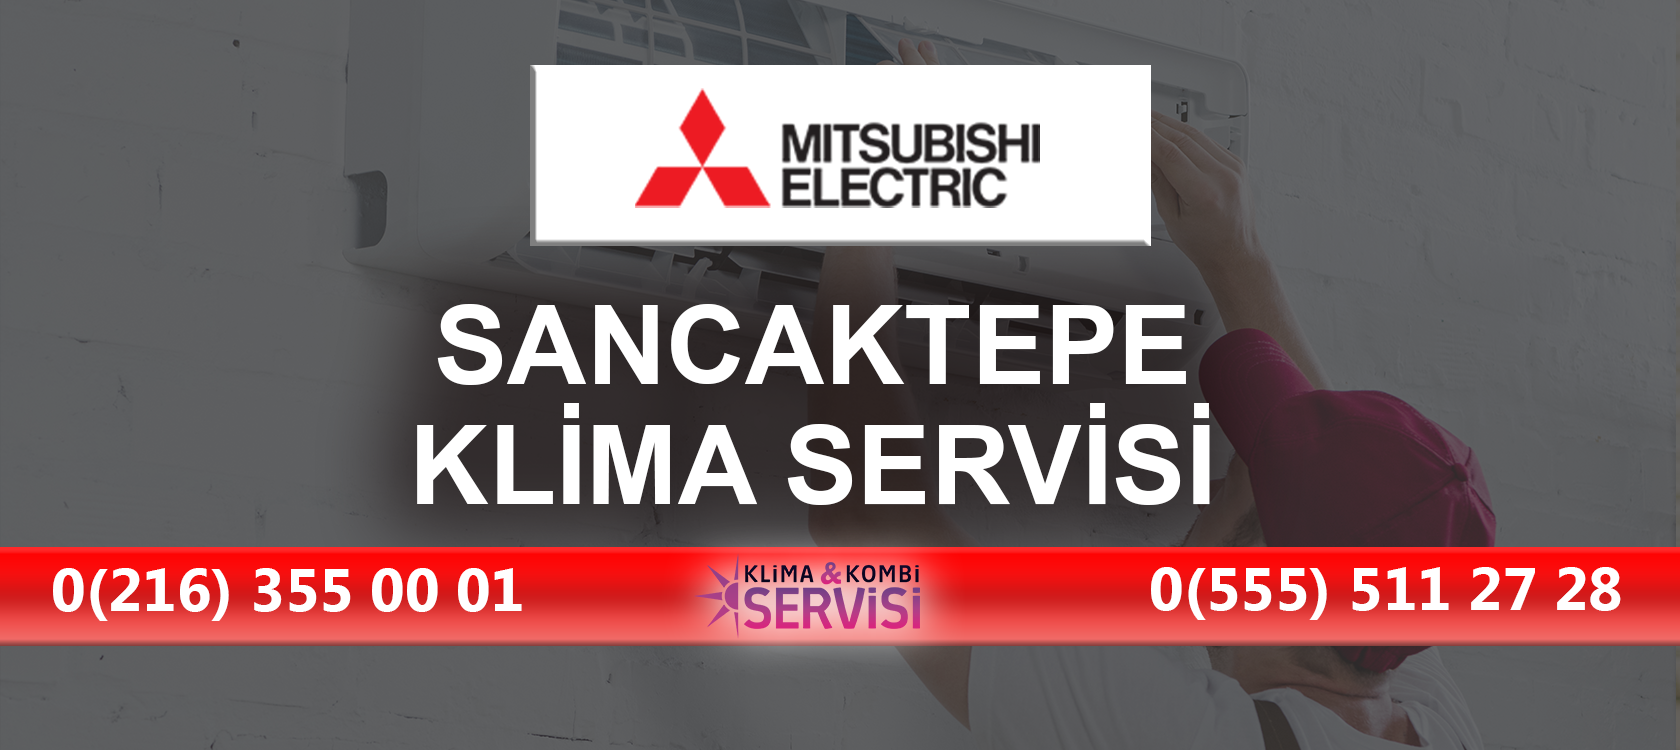 Sancaktepe Mitsubishi Klima Servisi